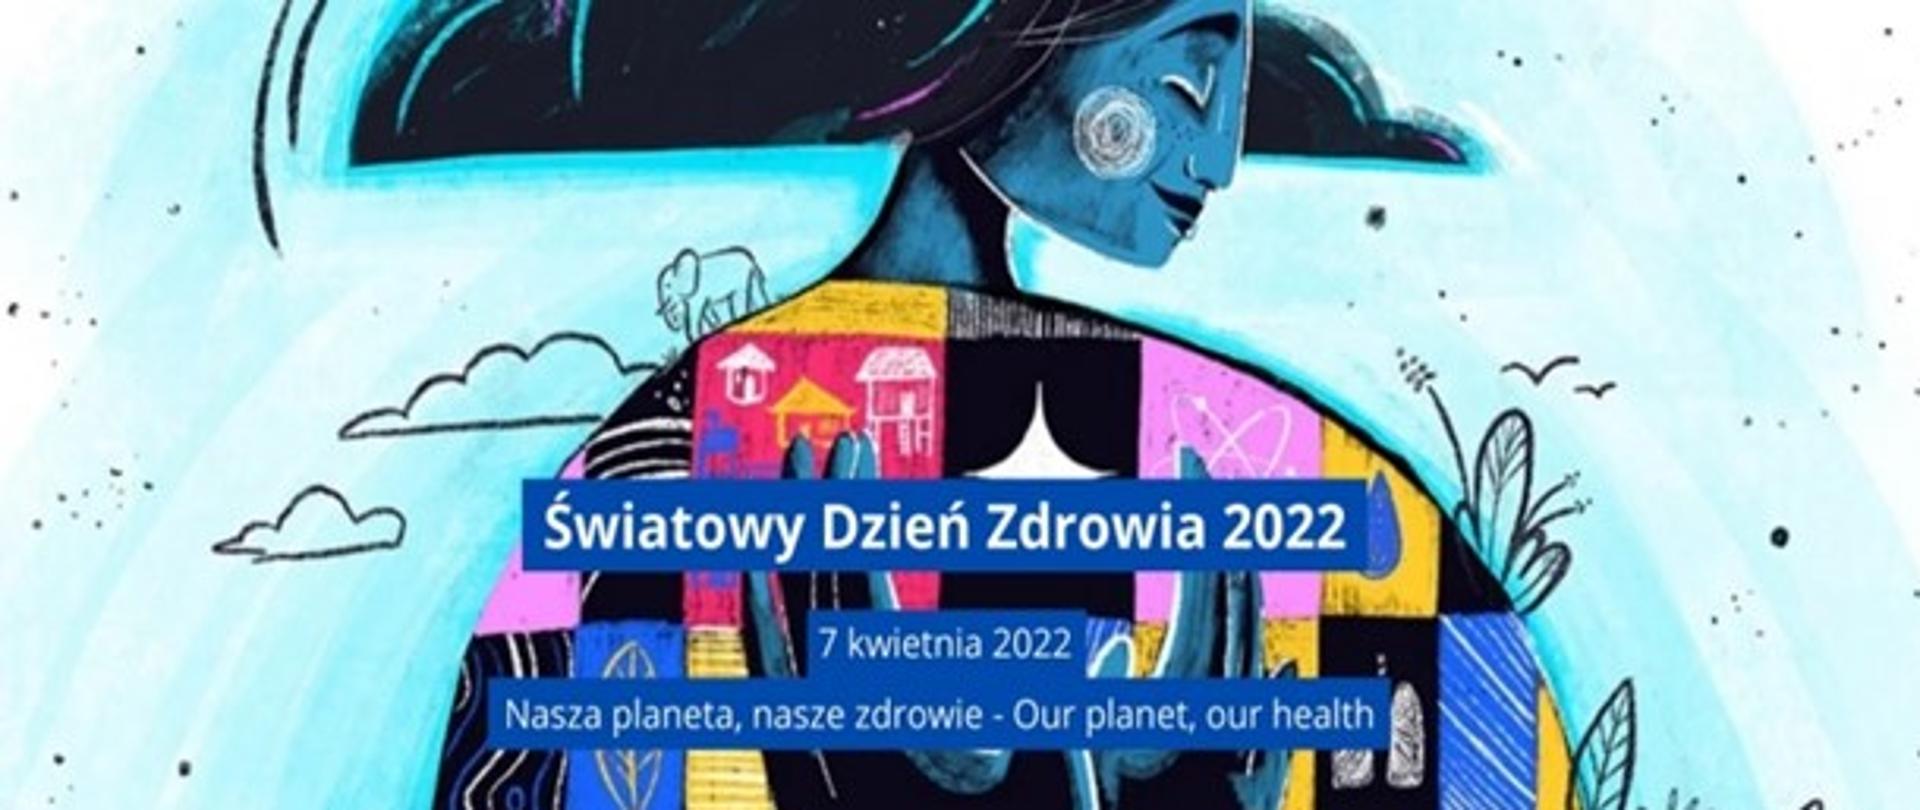 Światowy Dzień Zdrowia – 7 kwietnia 2022 r.
„Nasza planeta, nasze zdrowie”
